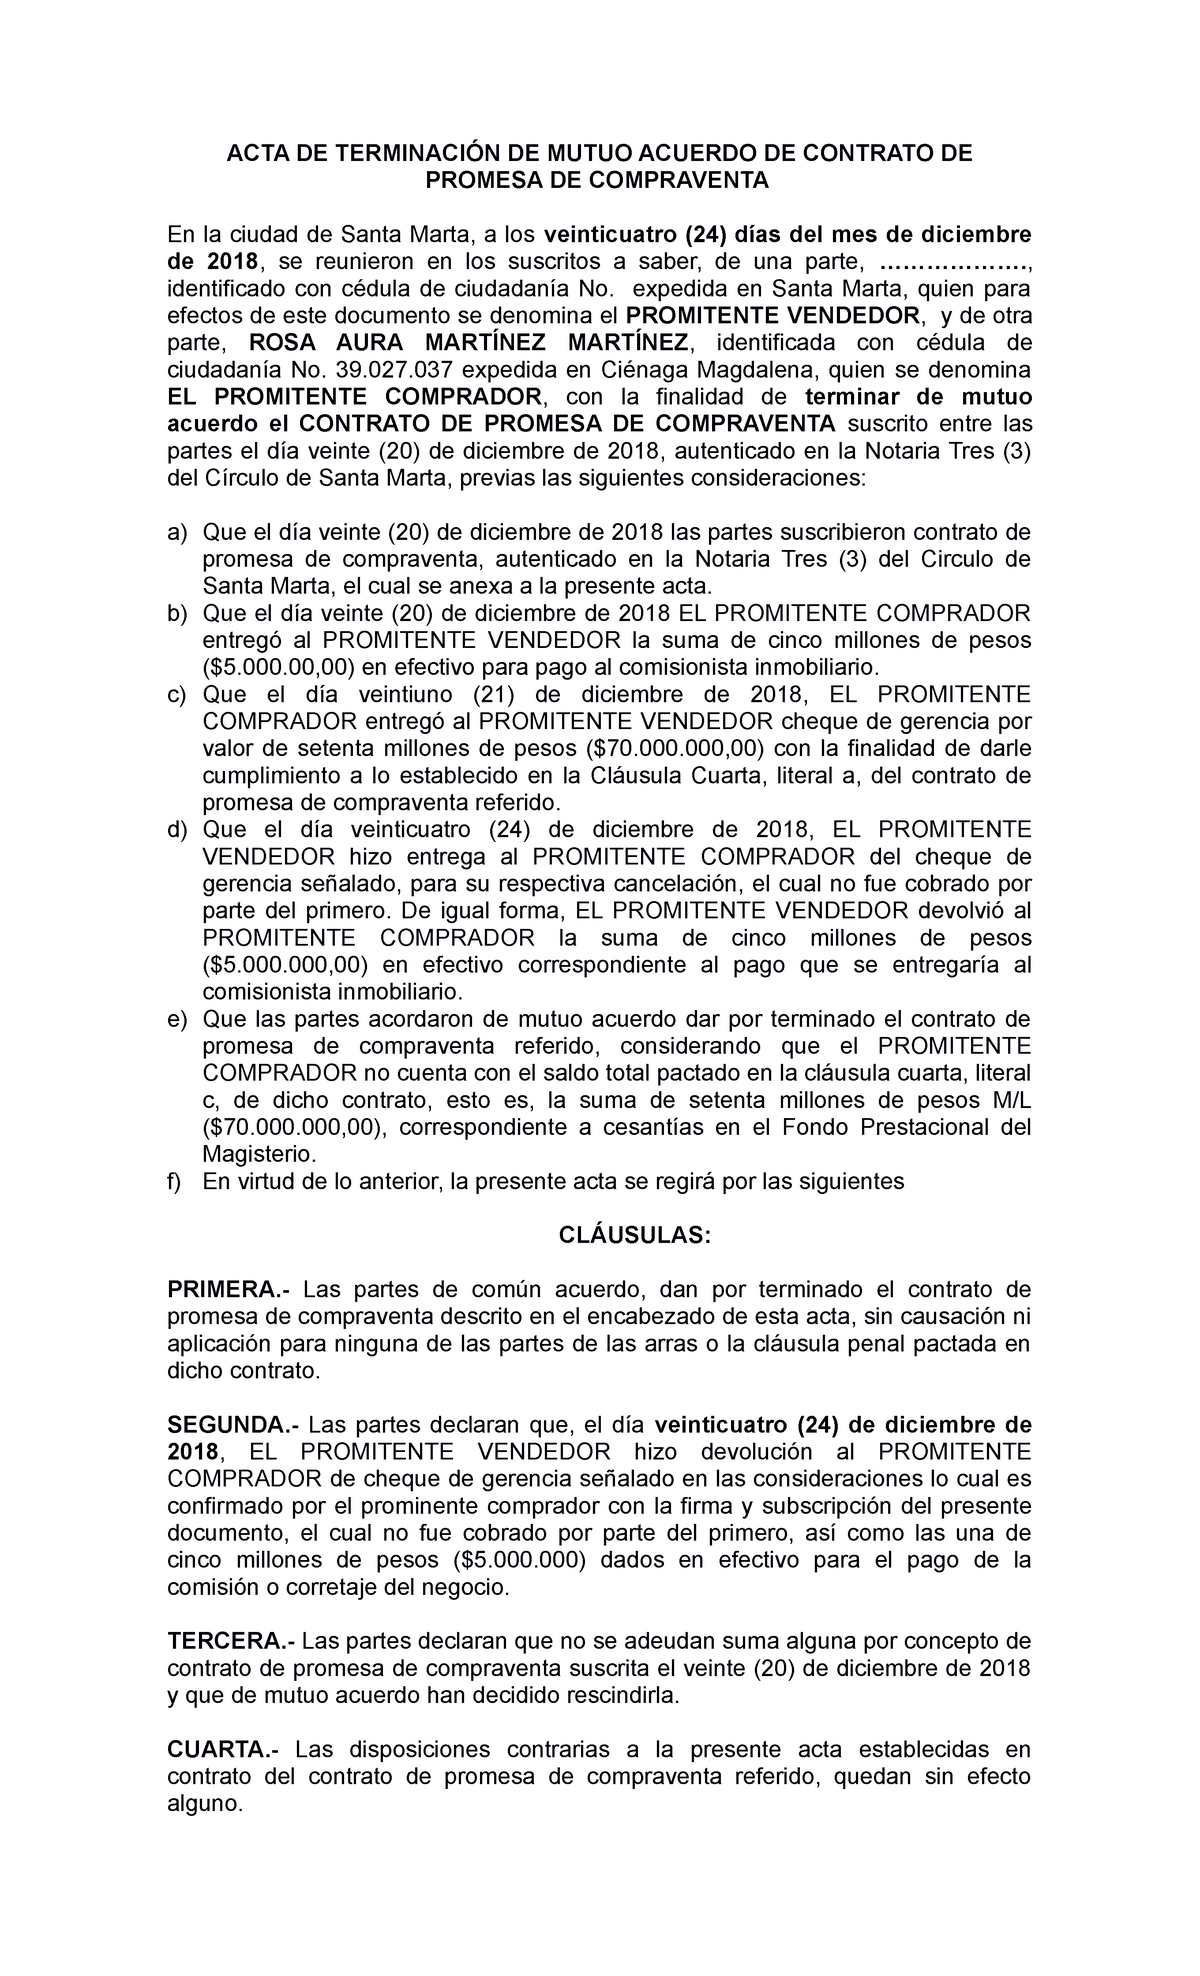 TerminacióN DE Mutuo Acuerdo - ACTA DE TERMINACIÓN DE MUTUO ACUERDO DE  CONTRATO DE PROMESA DE - Studocu